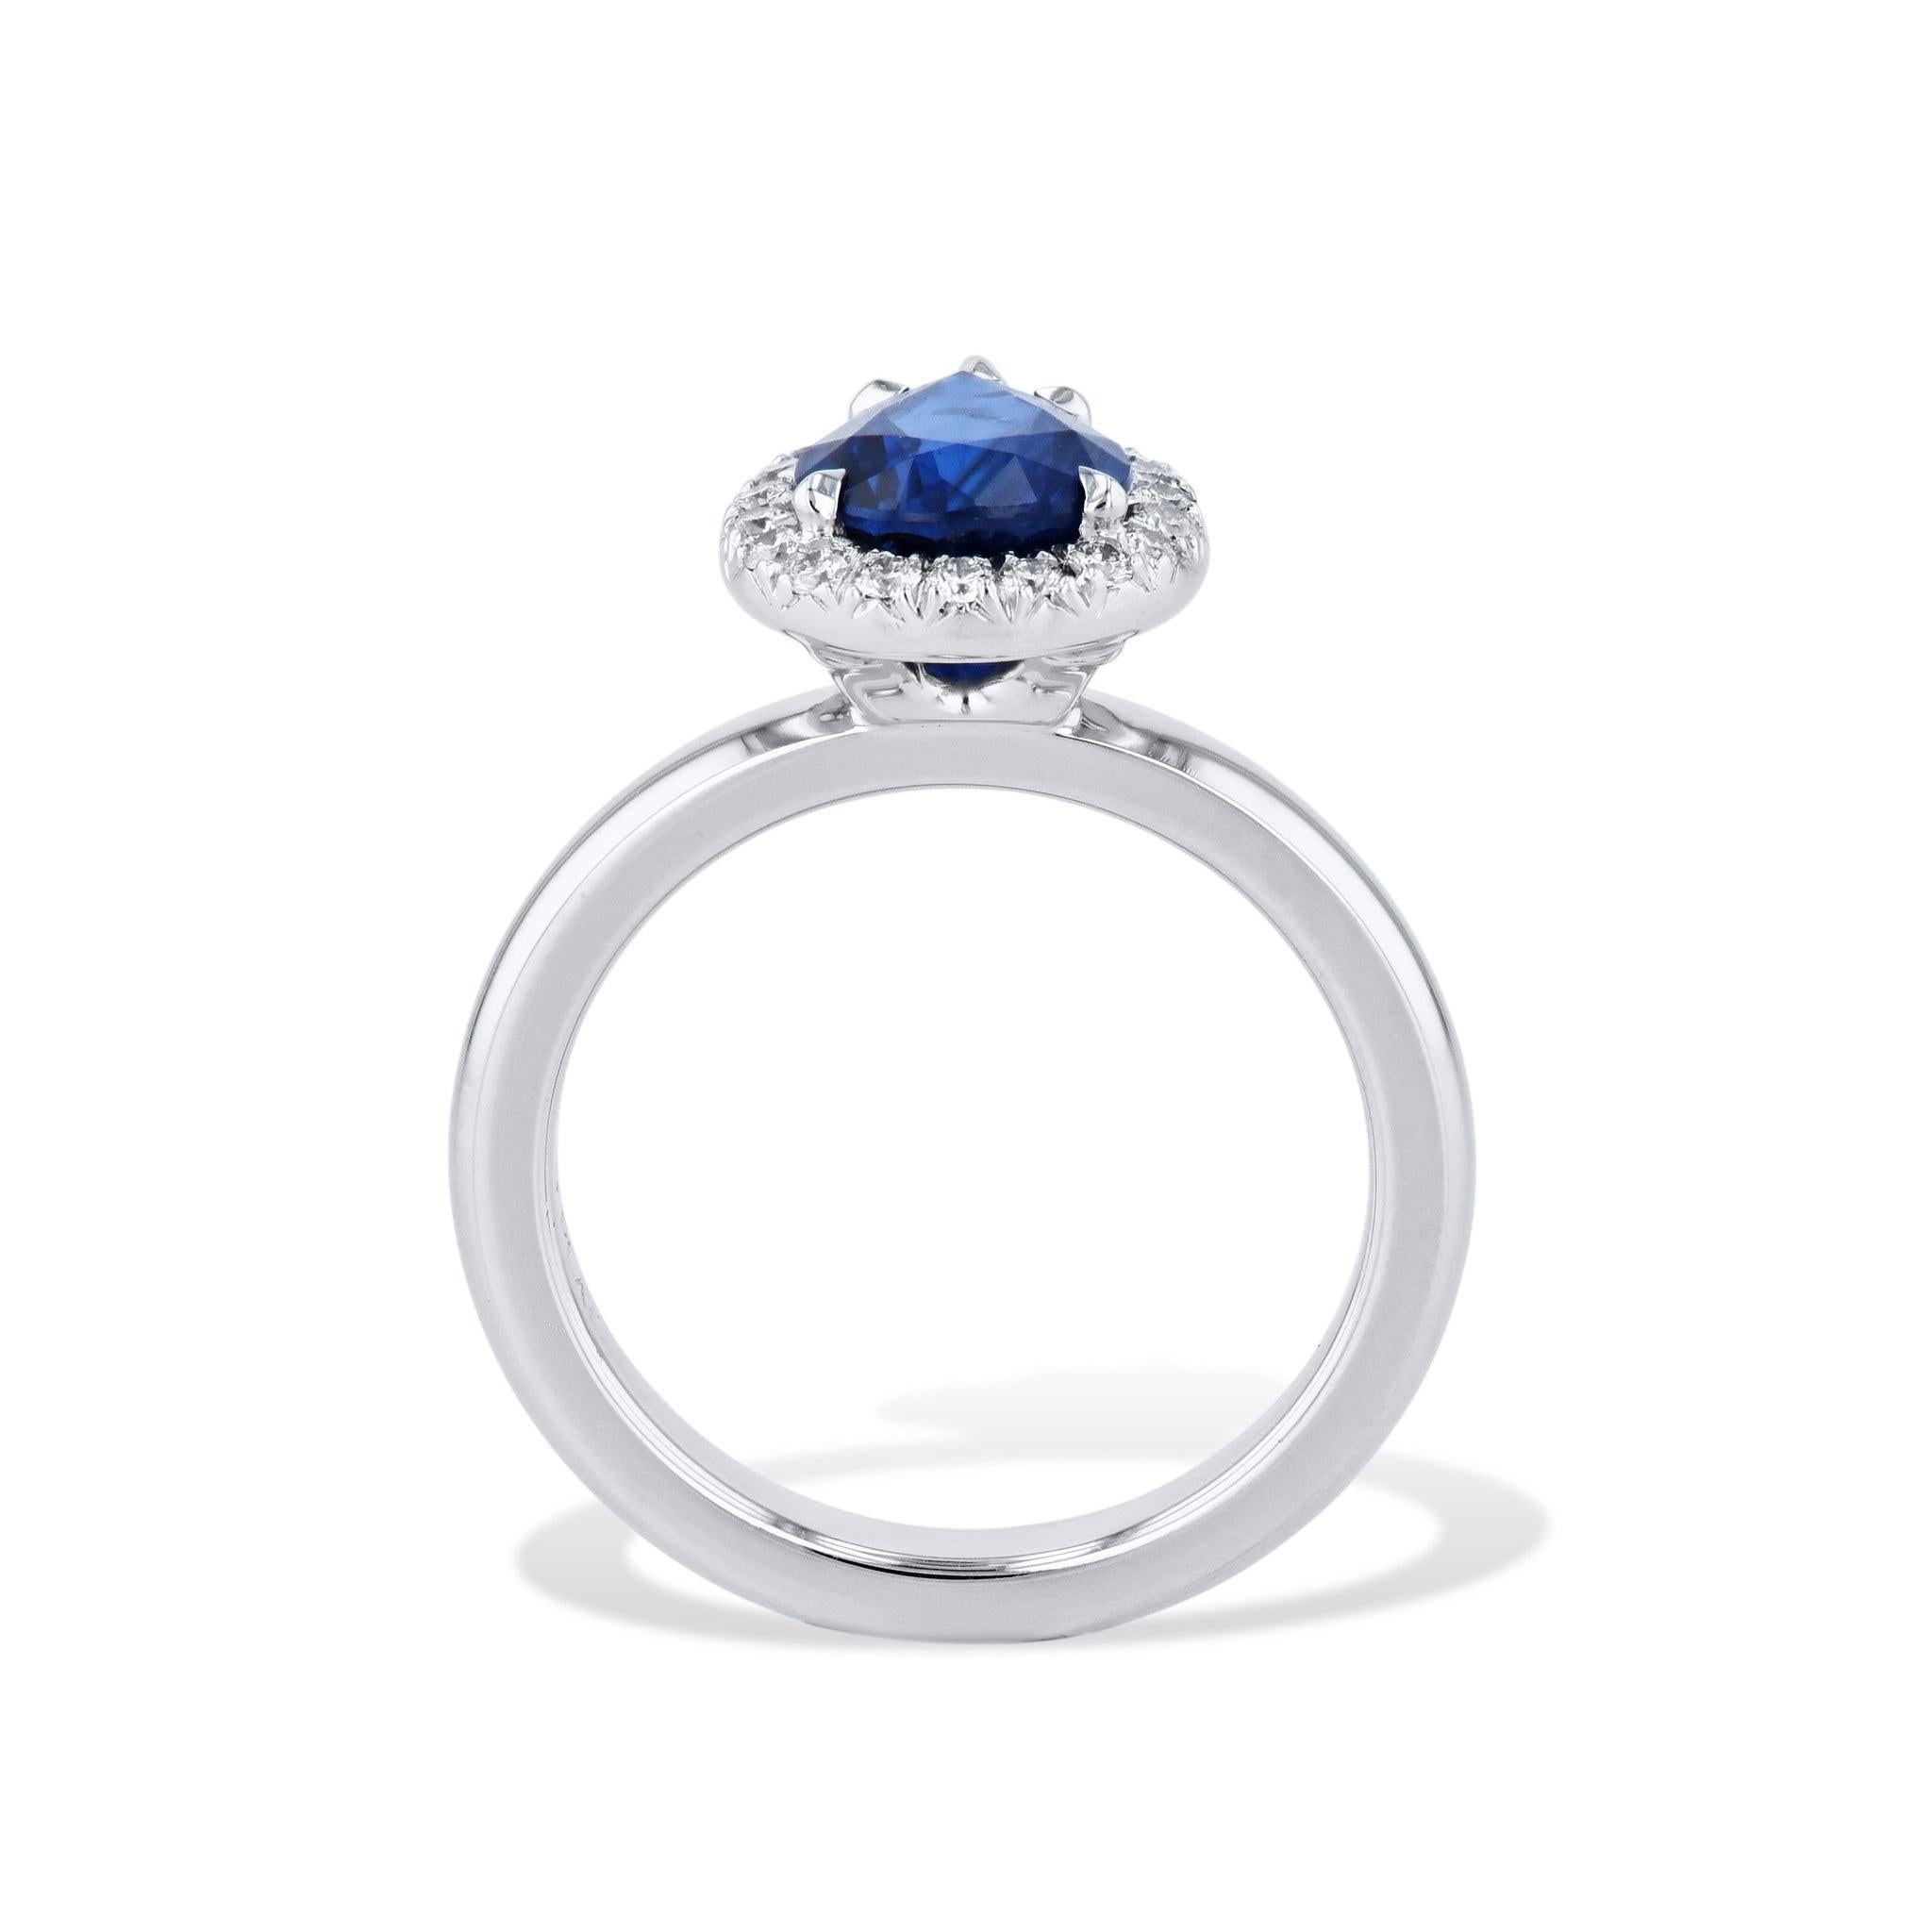 
Dies ist eine atemberaubende königsblau birnenförmigen Saphir pflastern Diamant Platin-Ring! 
Der birnenförmige Saphir in der Mitte hat 1,89 Karat. Zusätzlich gibt es 20 schillernde Diamanten von insgesamt 0,18 Karat, die die Farbe H und die